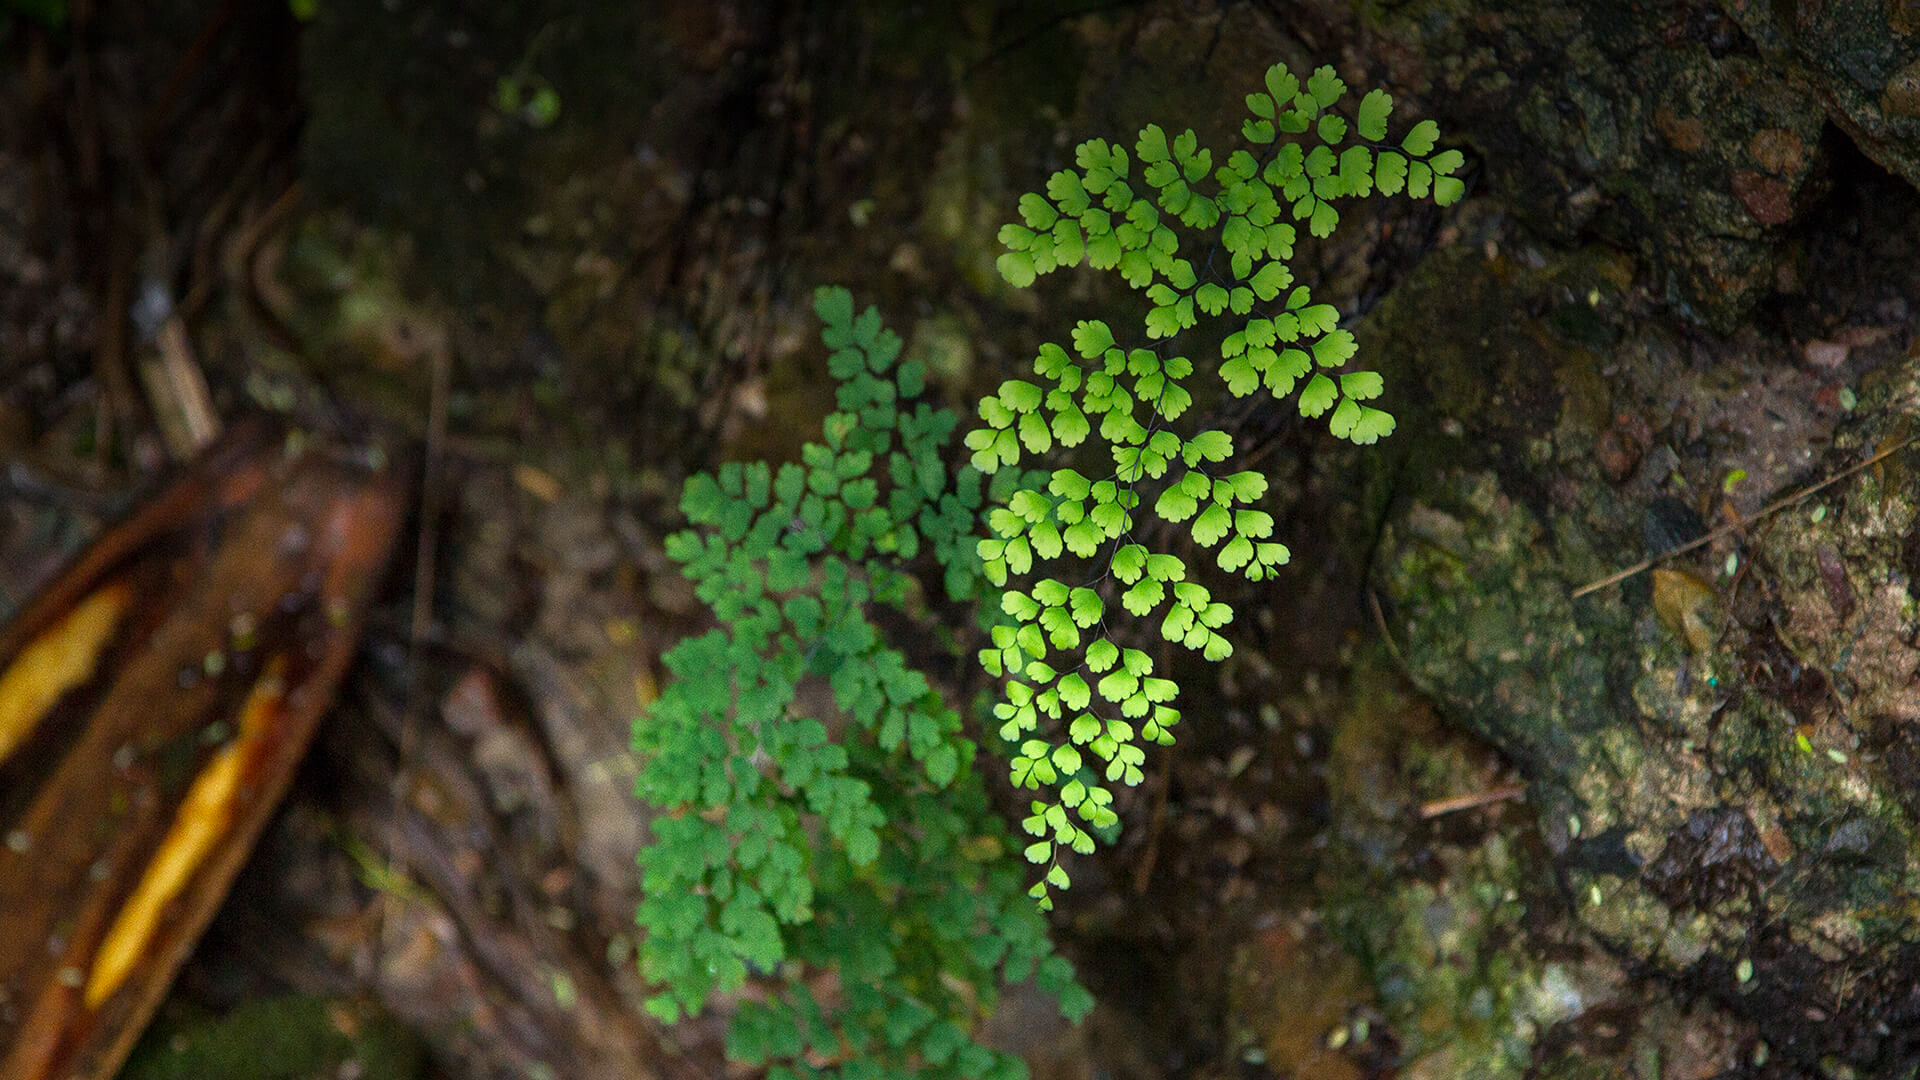 Maidenhair fern growing from a wet, rocky cliffside.